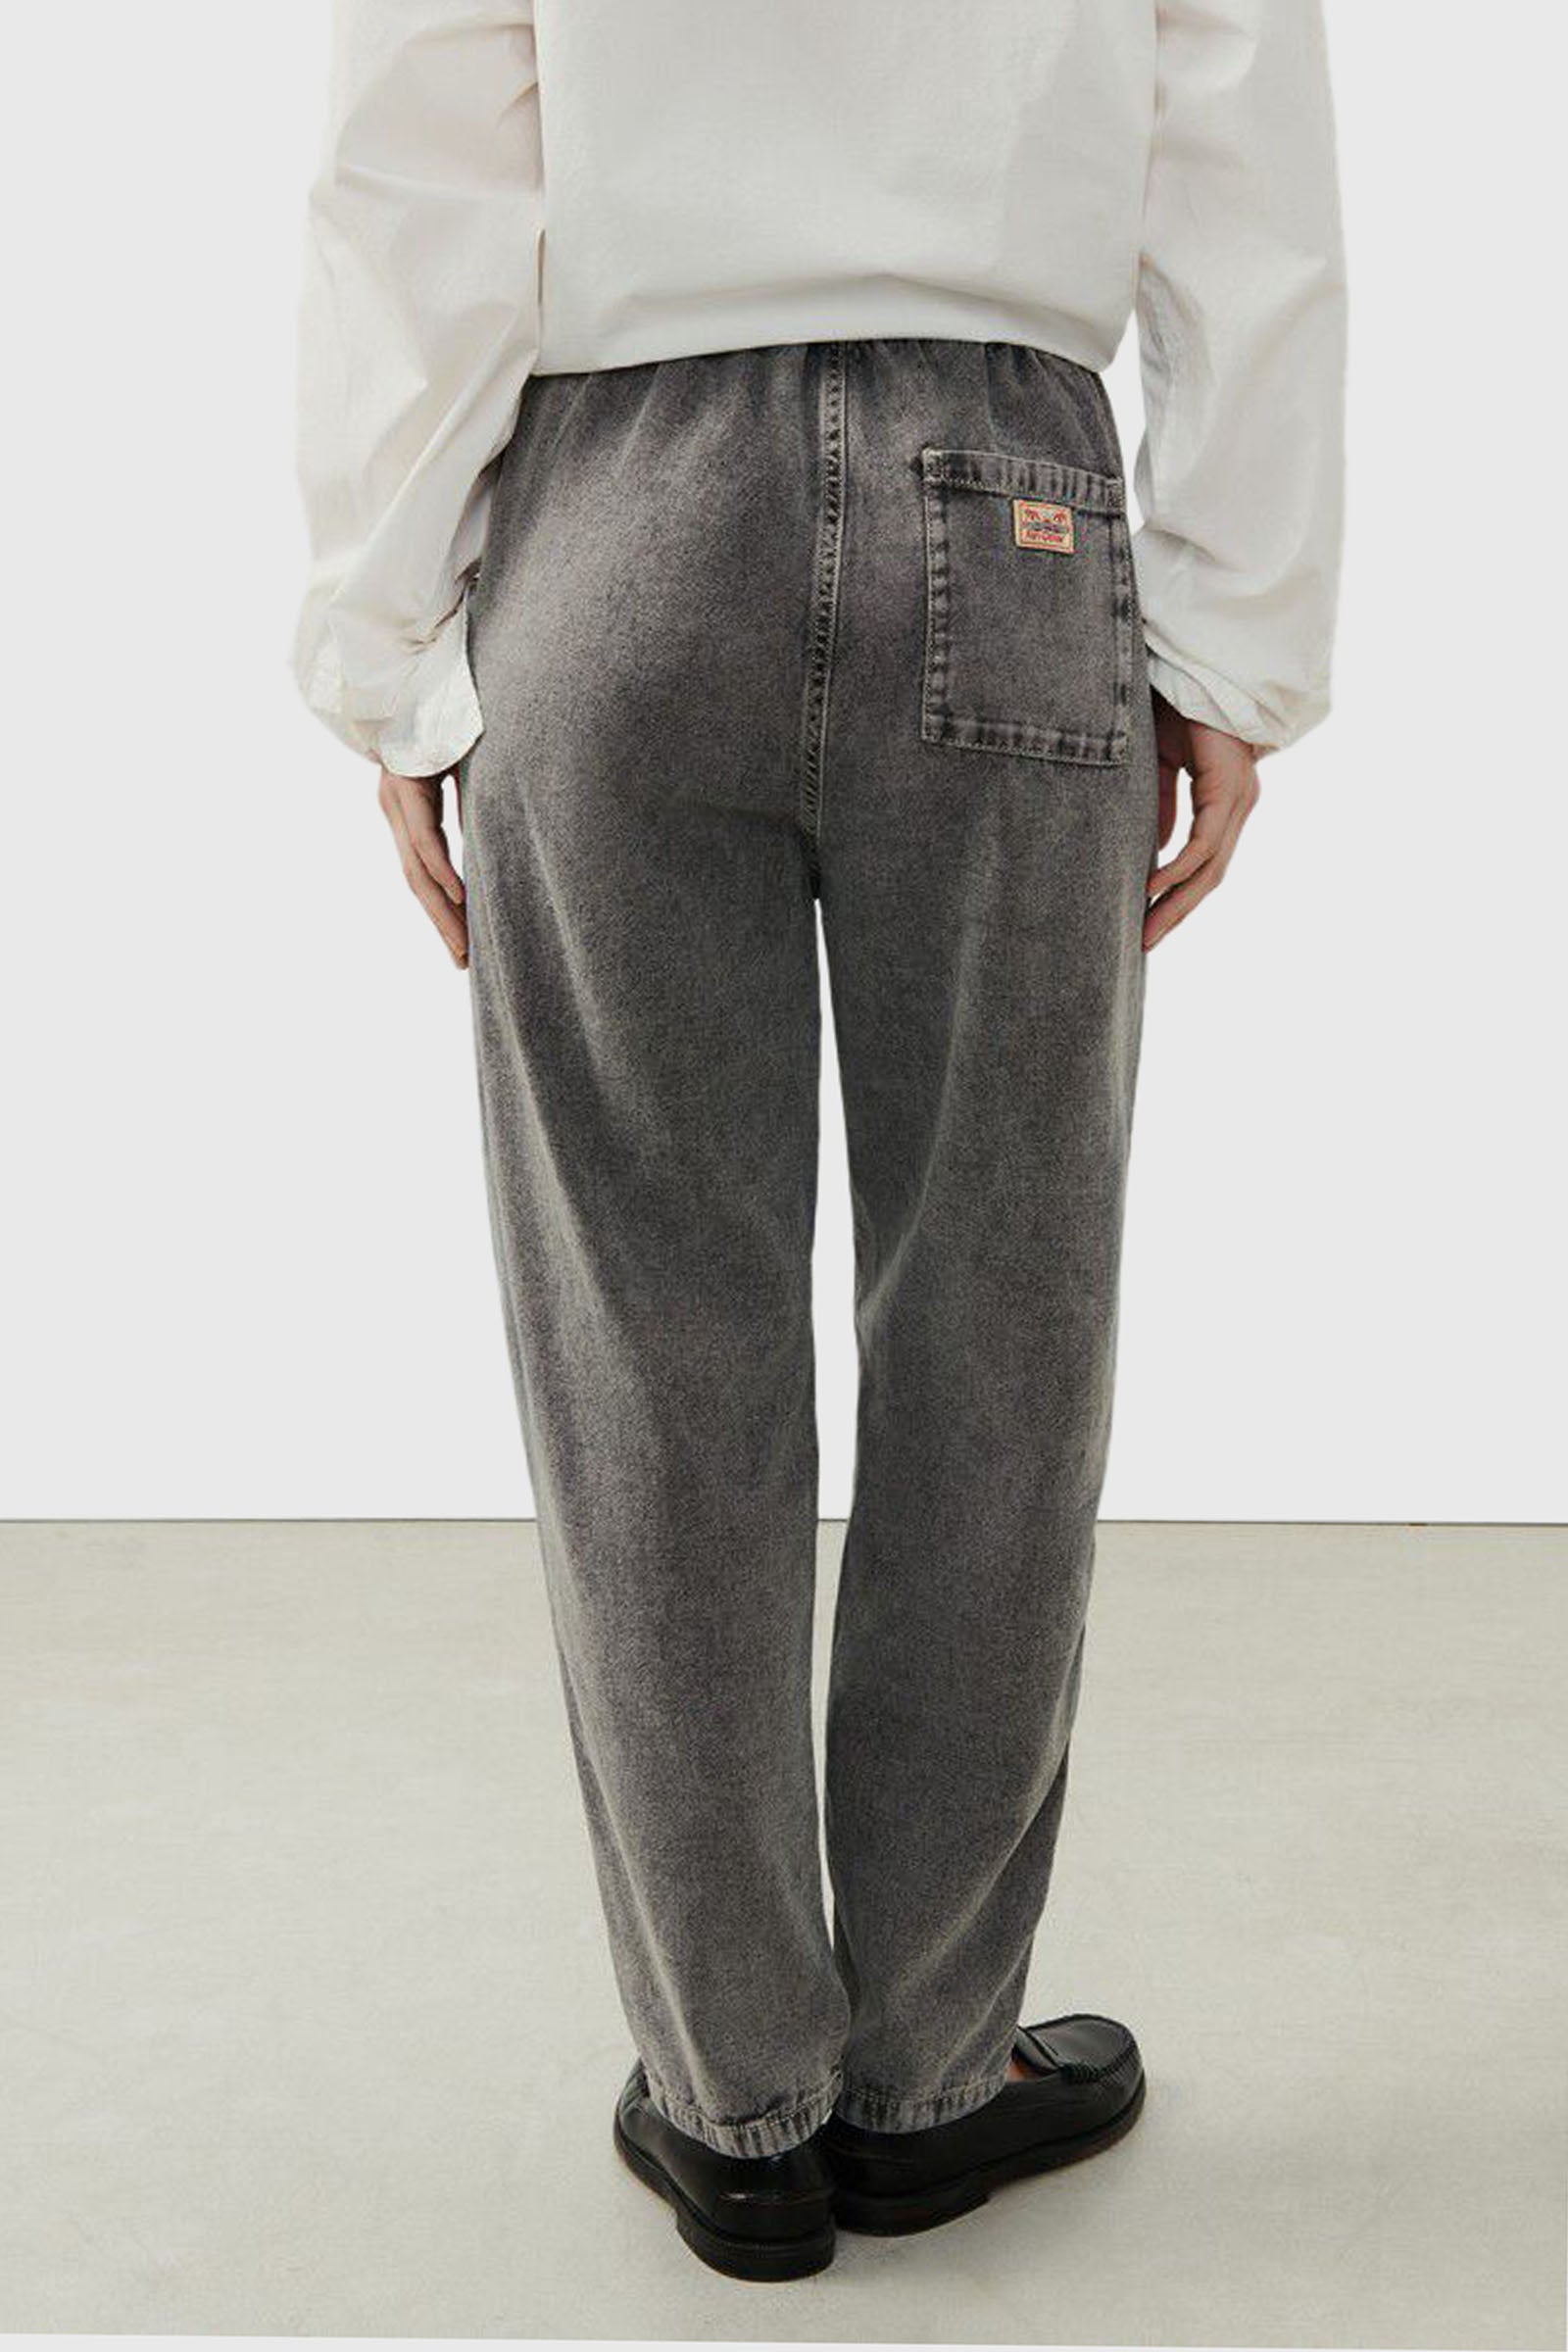 American Vintage Jeans Jazy Grigio/nero Donna - 5